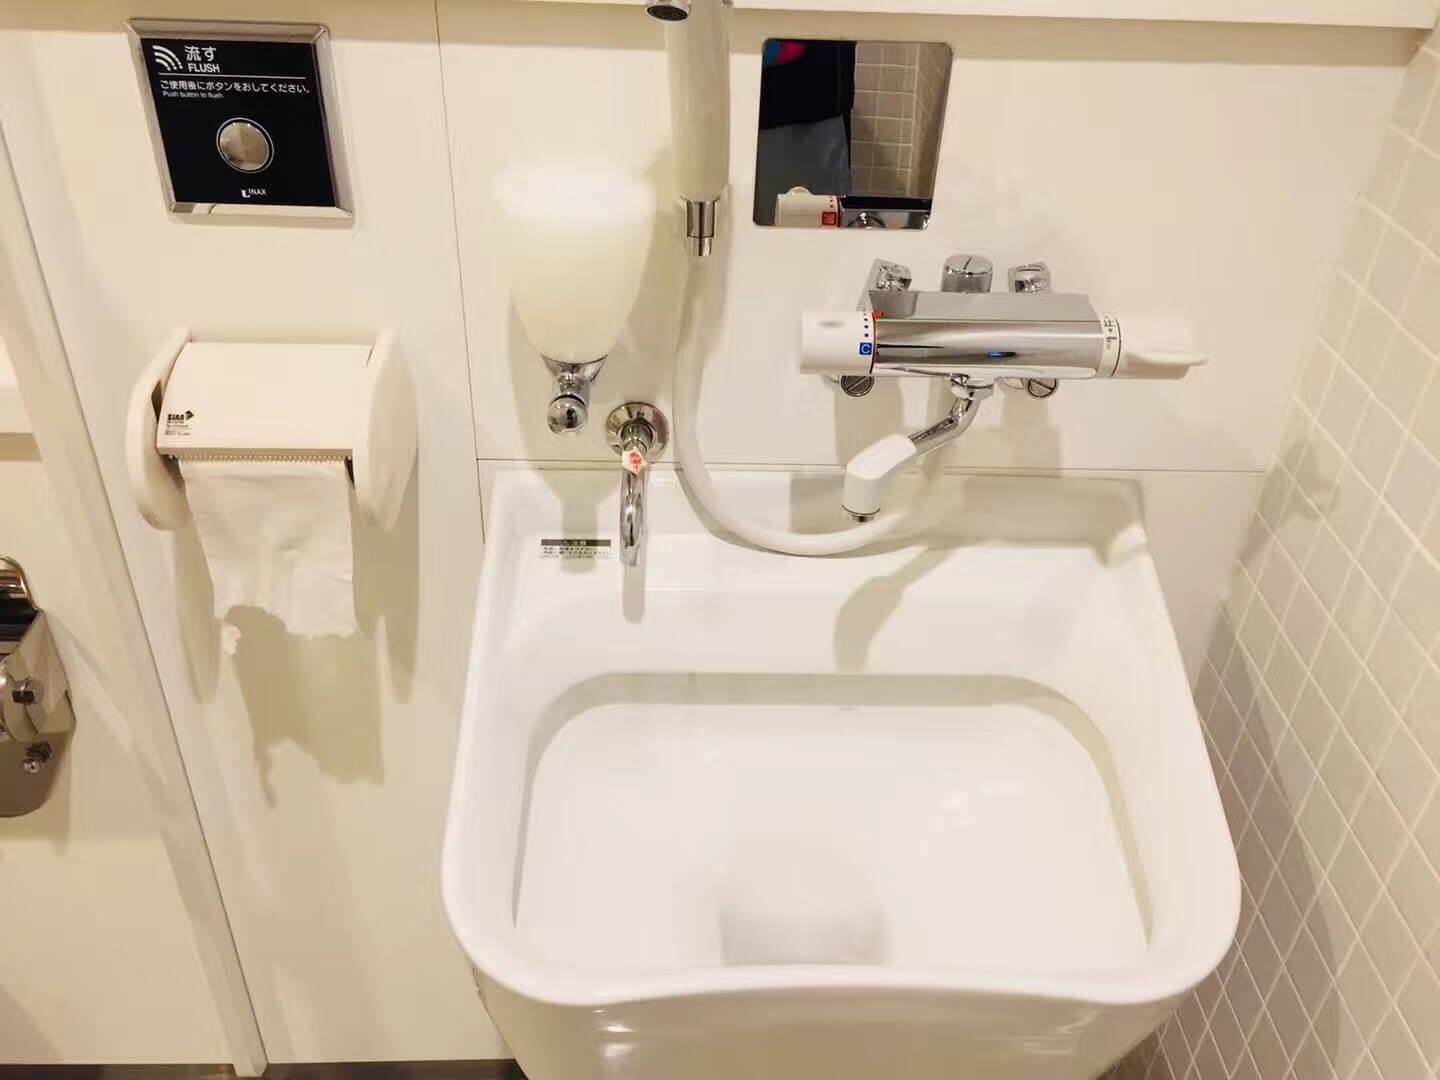 日本公共卫生间为疾障人士提供的特殊马桶